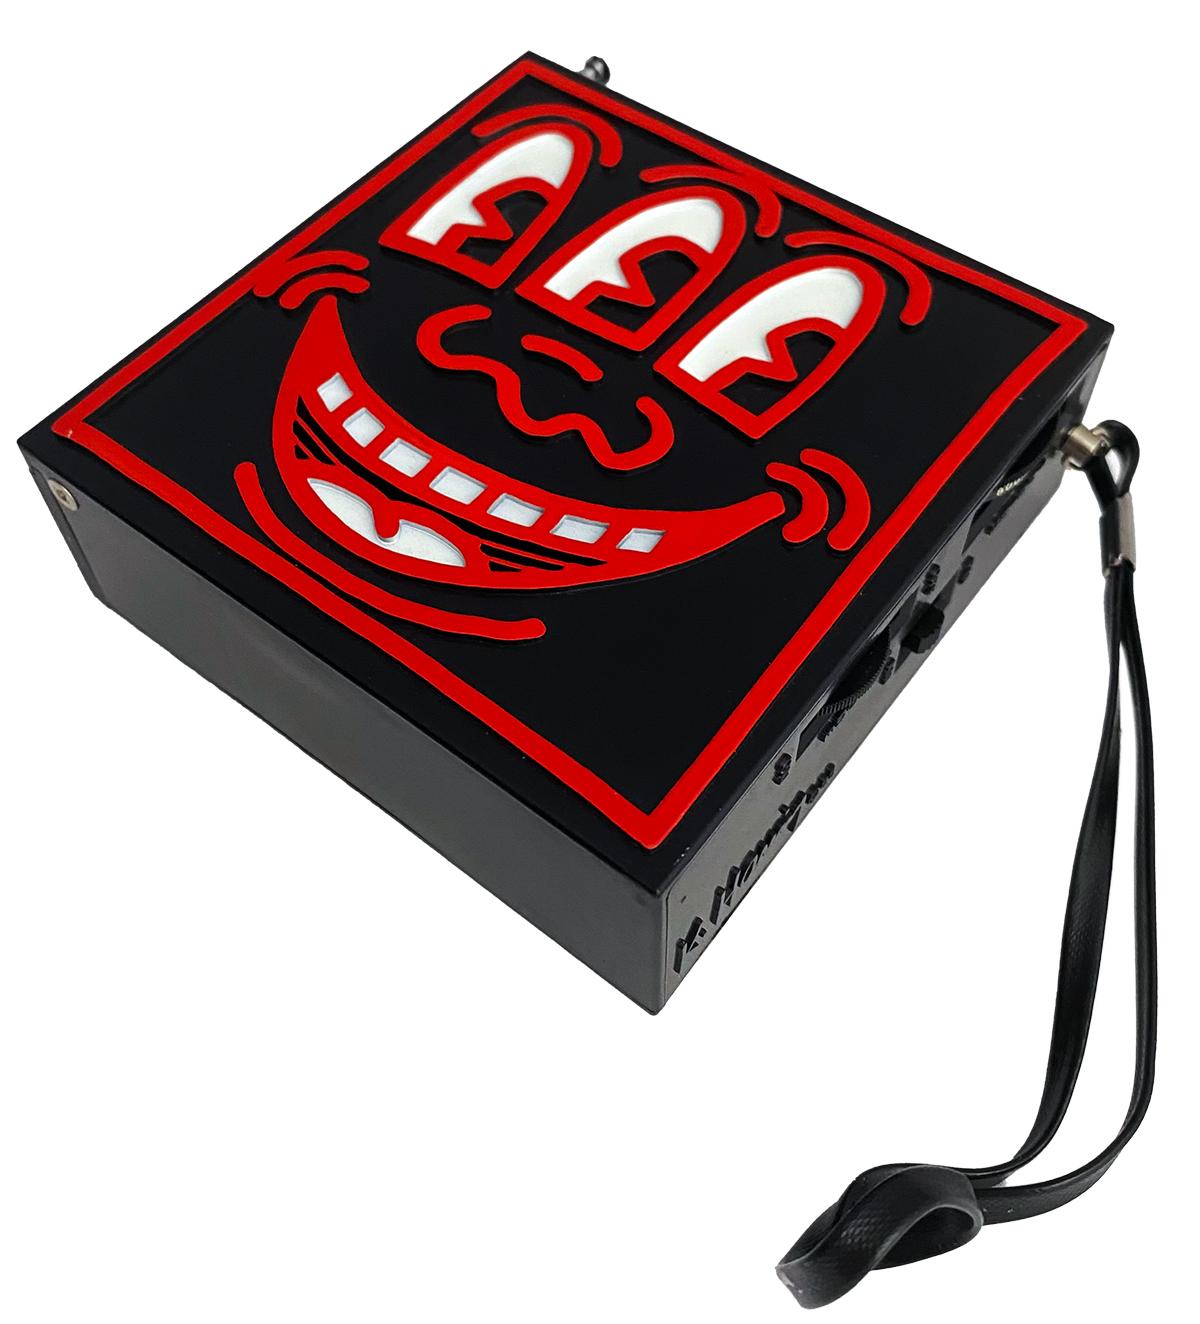 Keith Haring Pop Shop 1986:
Ein sehr gut erhaltenes Keith Haring Pop Shop Radio in der Originalverpackung. Verkauft im Pop Shop in New York um 1985. Mit einer auffälligen Unterschrift von Keith Haring auf der Schachtel und einer eingegossenen